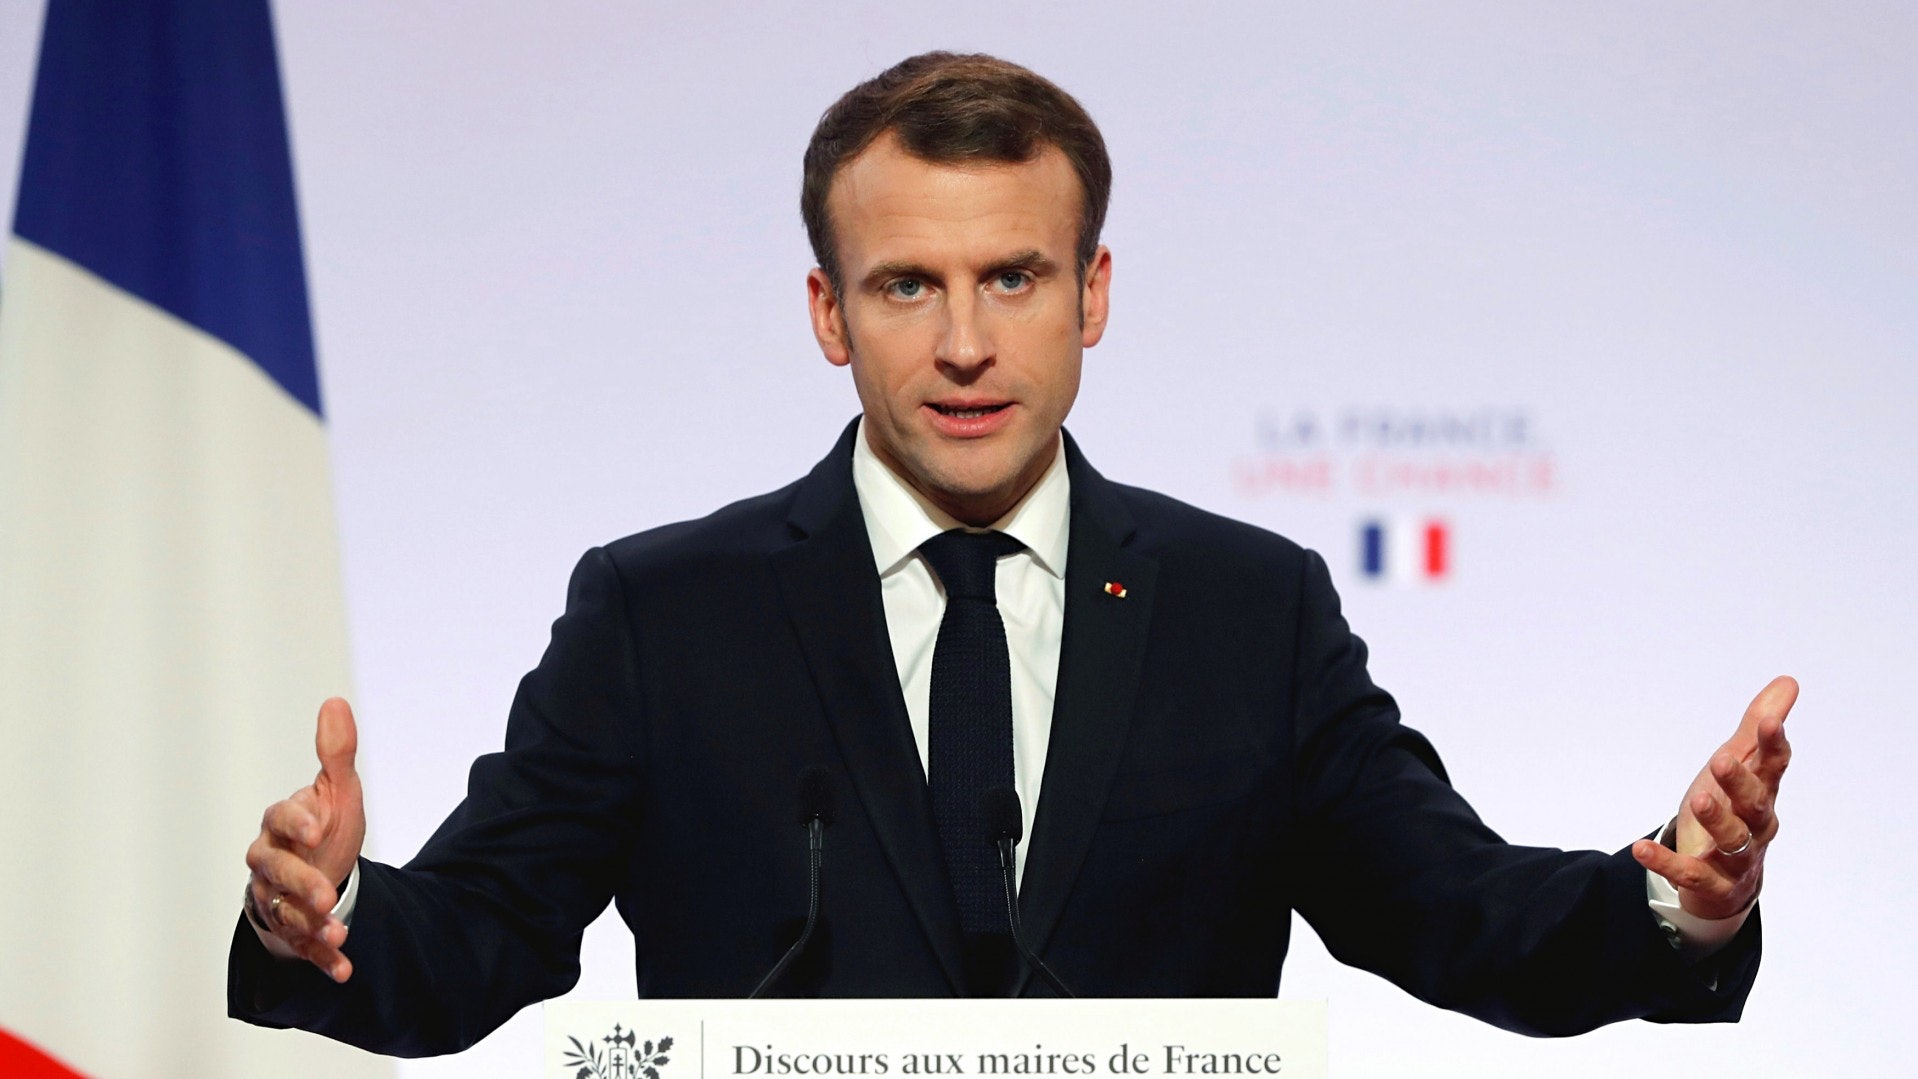 法國2022年將任歐盟理事會主席國 馬克龍闡雄心壯志